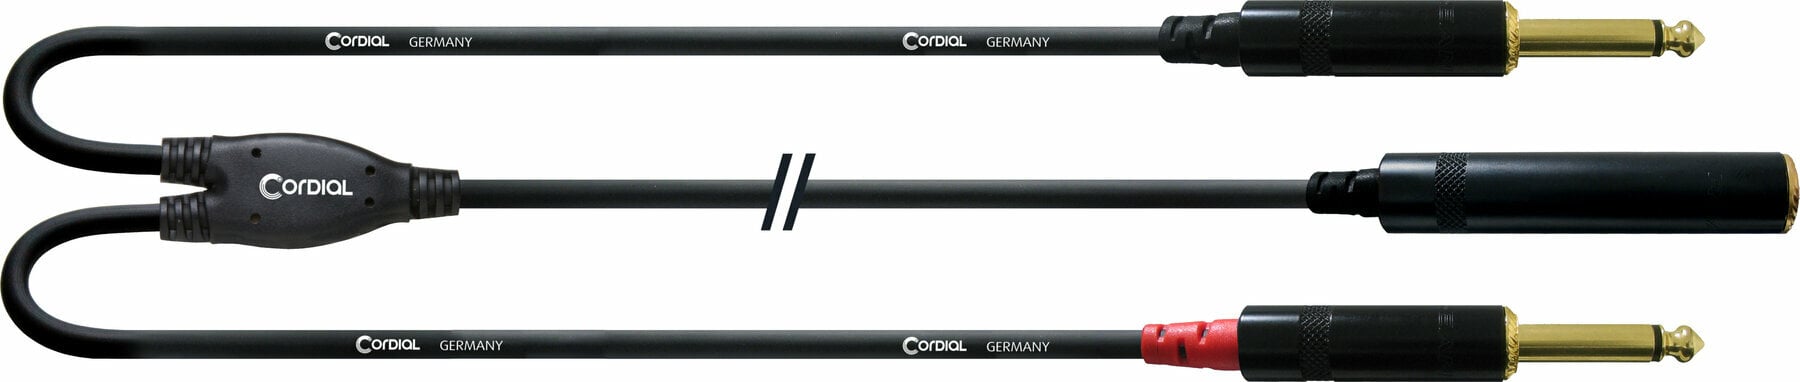 Audió kábel Cordial CFY 0,3 KPP 30 cm Audió kábel